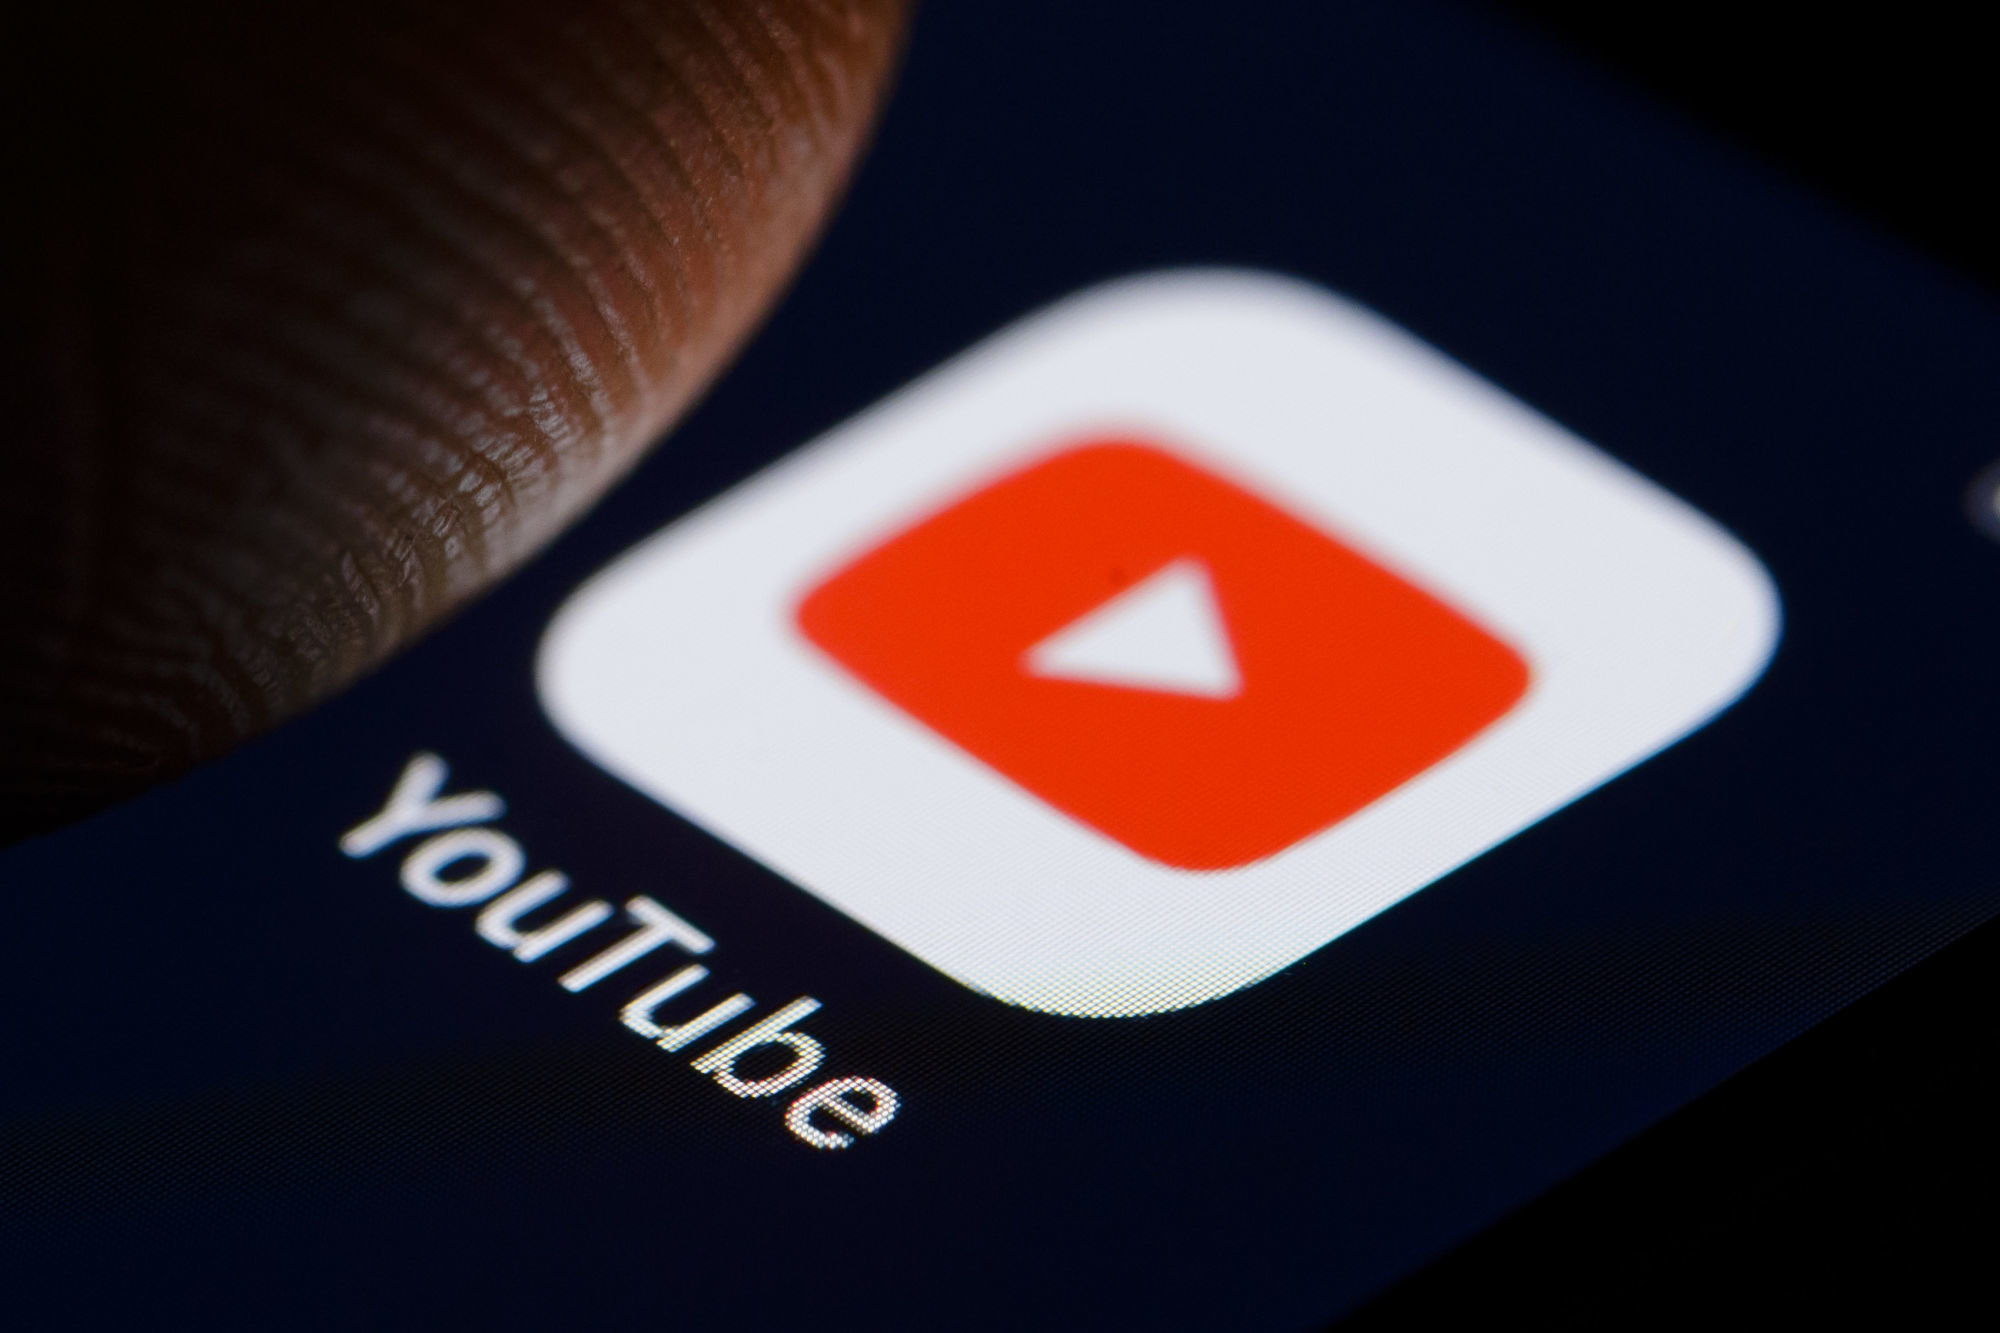 رسميًا تطبيق يوتيوب يدعم ميزة فرز مقاطع الفيديو وقوائم التشغيل الخاصة بالقنوات